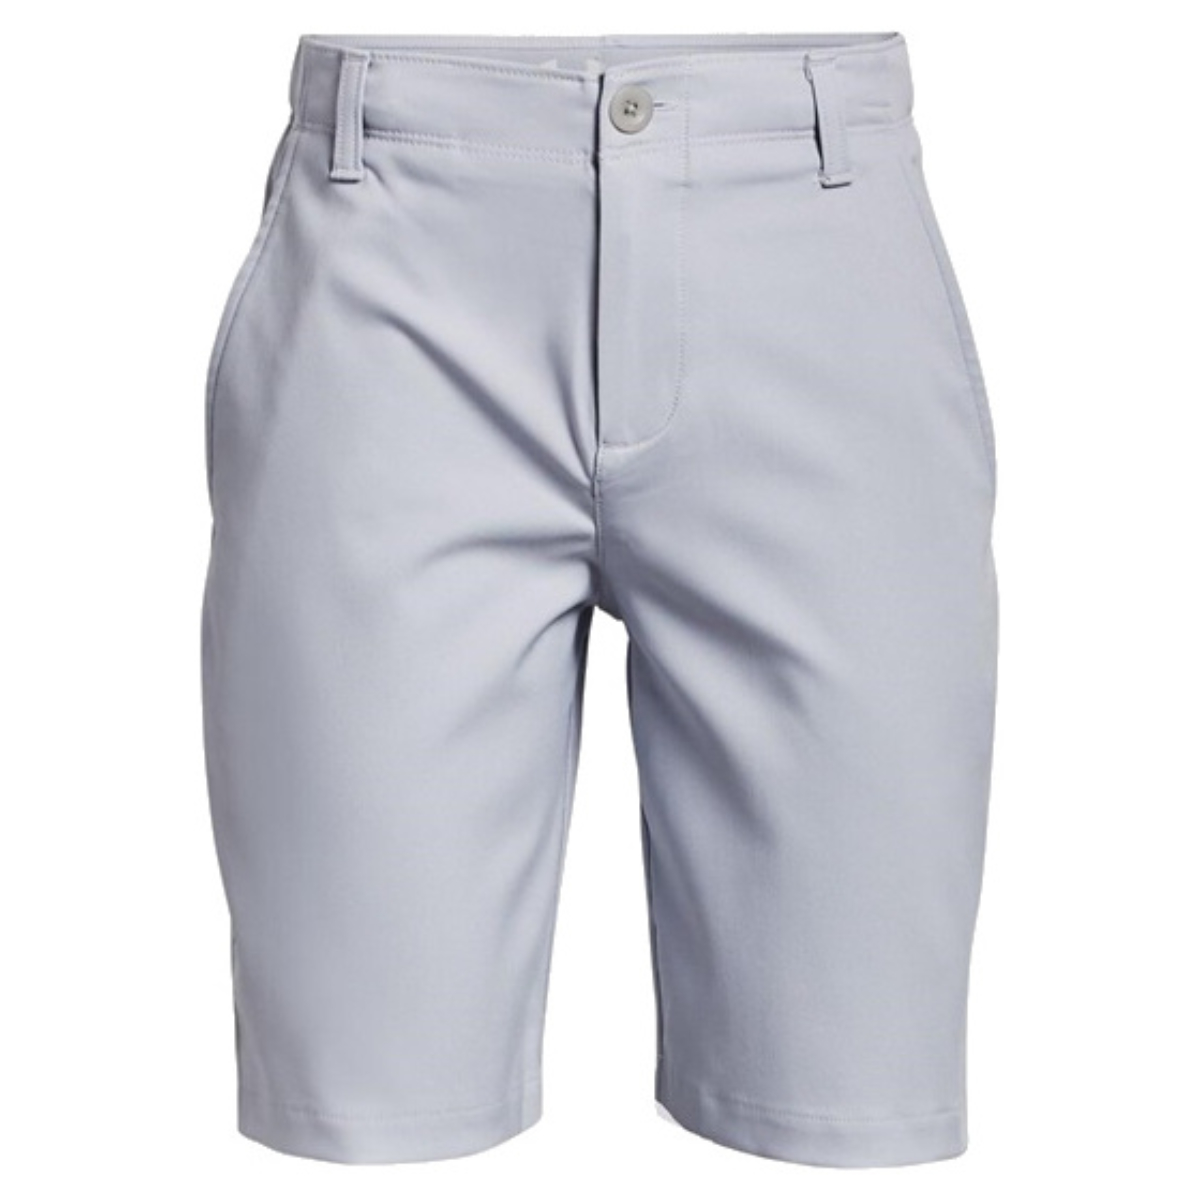 Under Armour Boys Golf Shorts Mod Gray